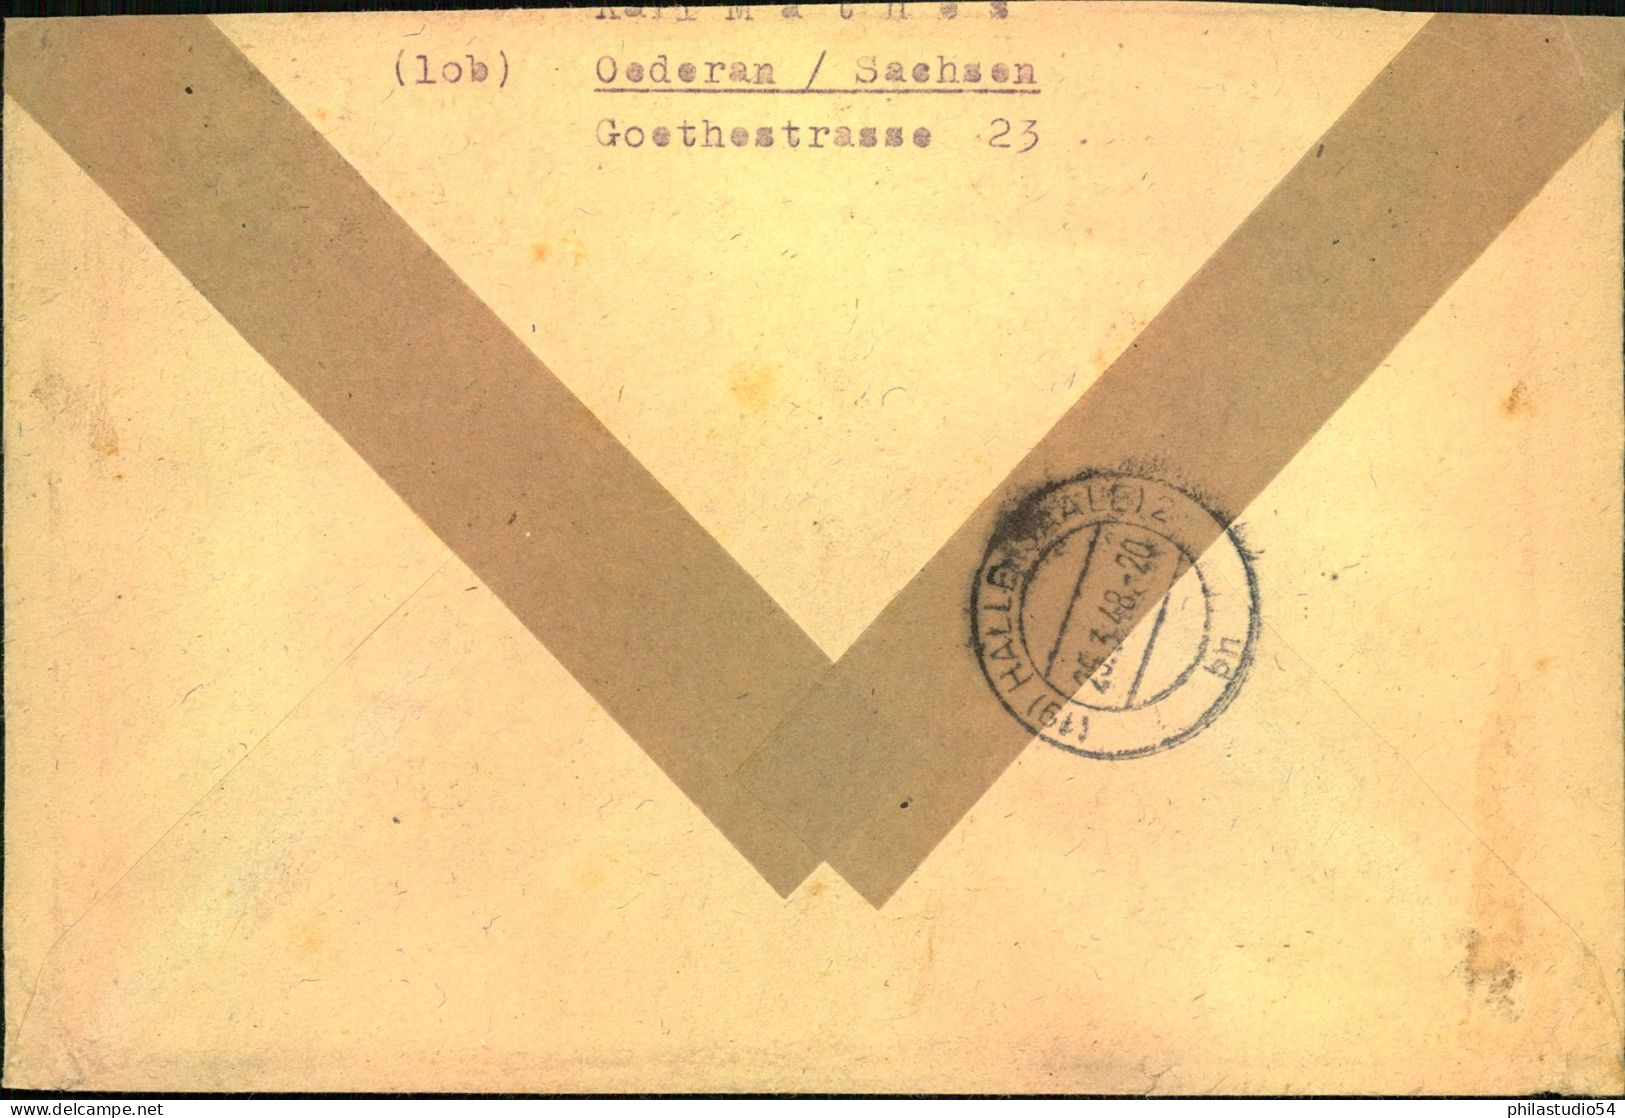 1948, Einschreiben Doppelbruef Mit 1 M Taube OR Dgz Ab (10) OEDERAN Mit R-Tettel (10b)t R-Te - Covers & Documents